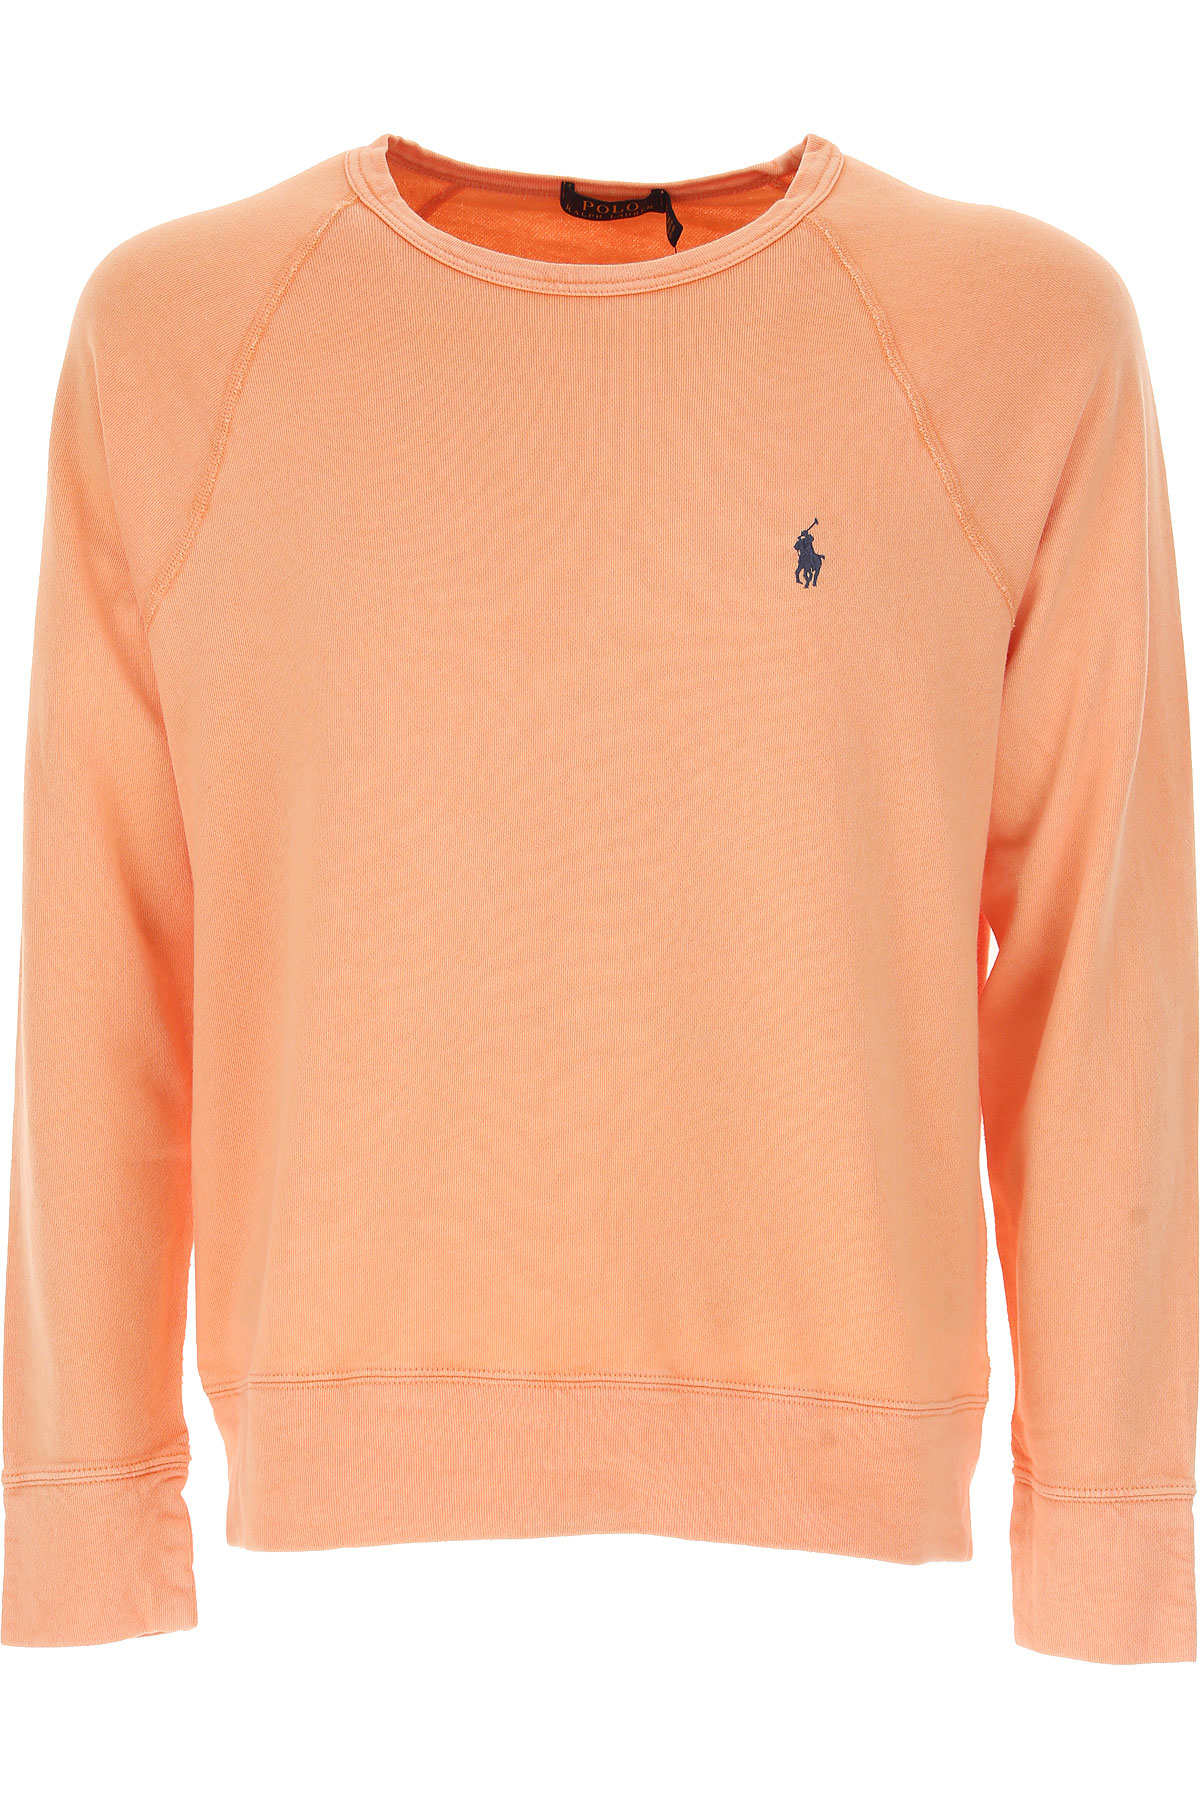 Ralph Lauren Sweatshirt für Herren, Kapuzenpulli, Hoodie, Sweats Günstig im Sale, Blasse Aprikose, Baumwolle, 2017, M XL